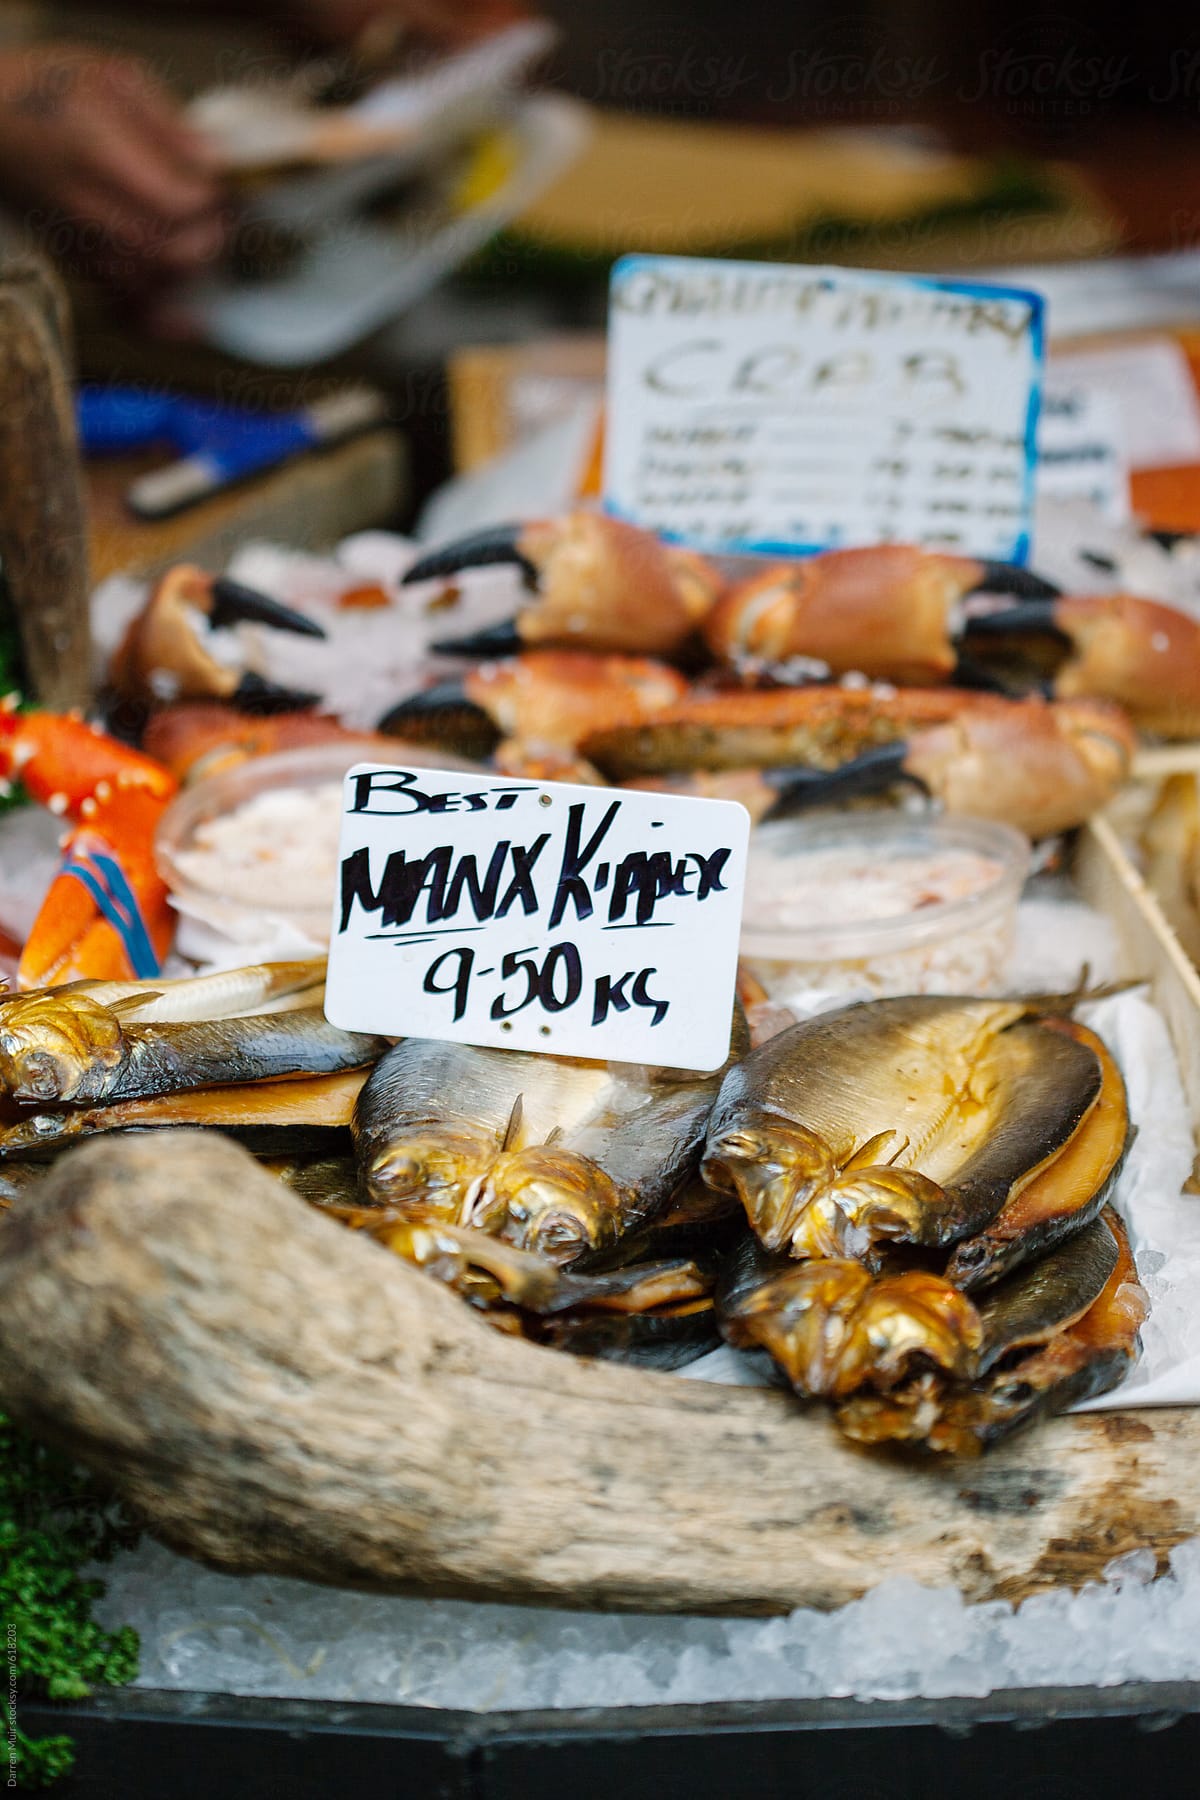 Manx kippers at a fish market.